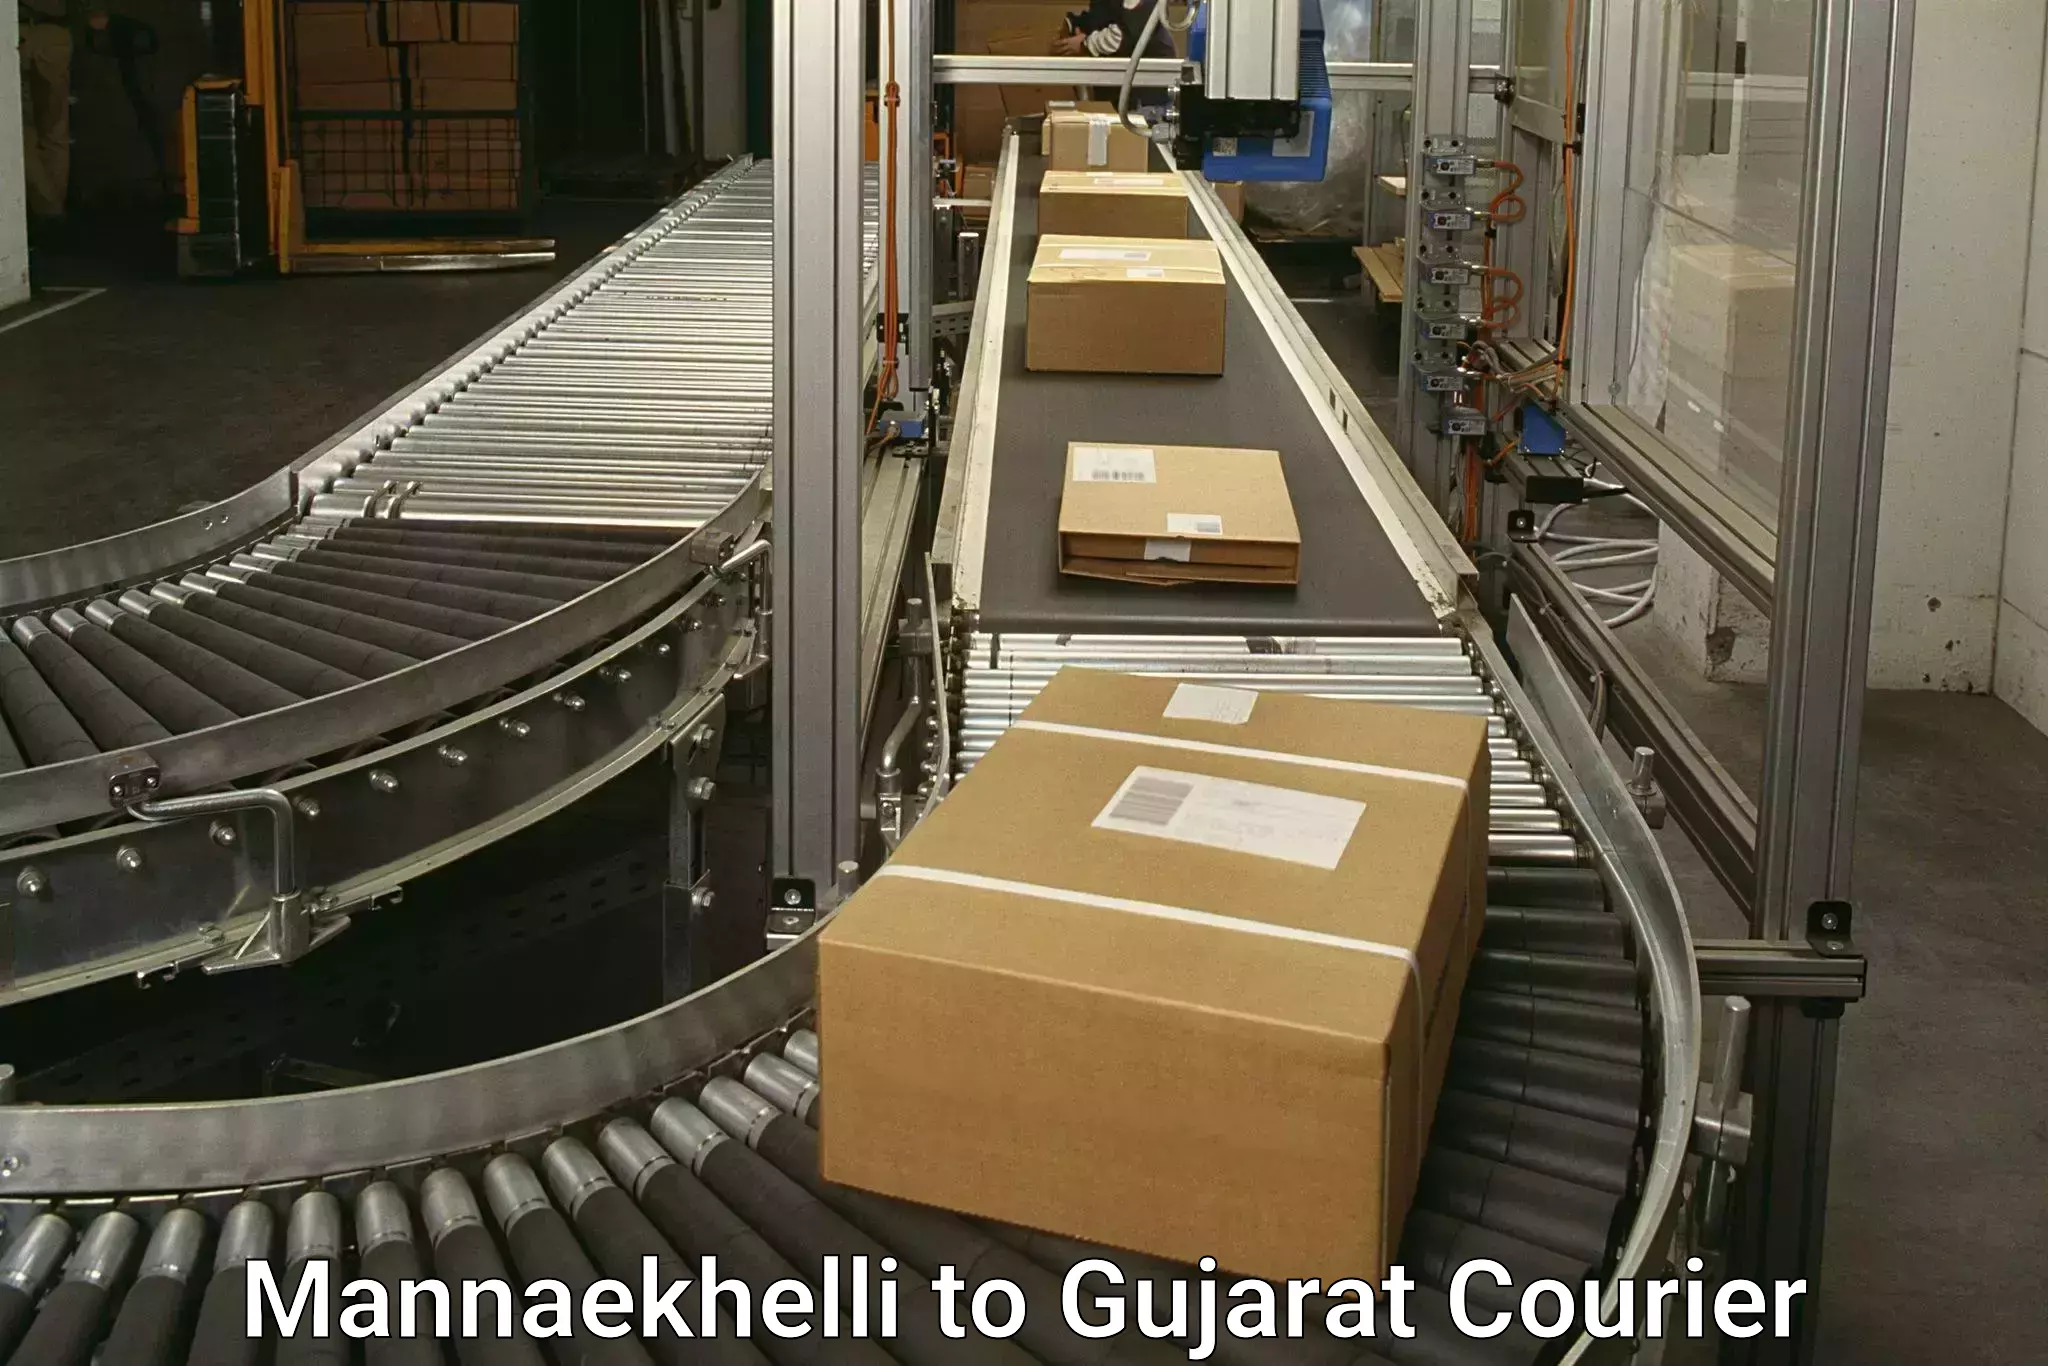 On-demand courier Mannaekhelli to Gandhidham